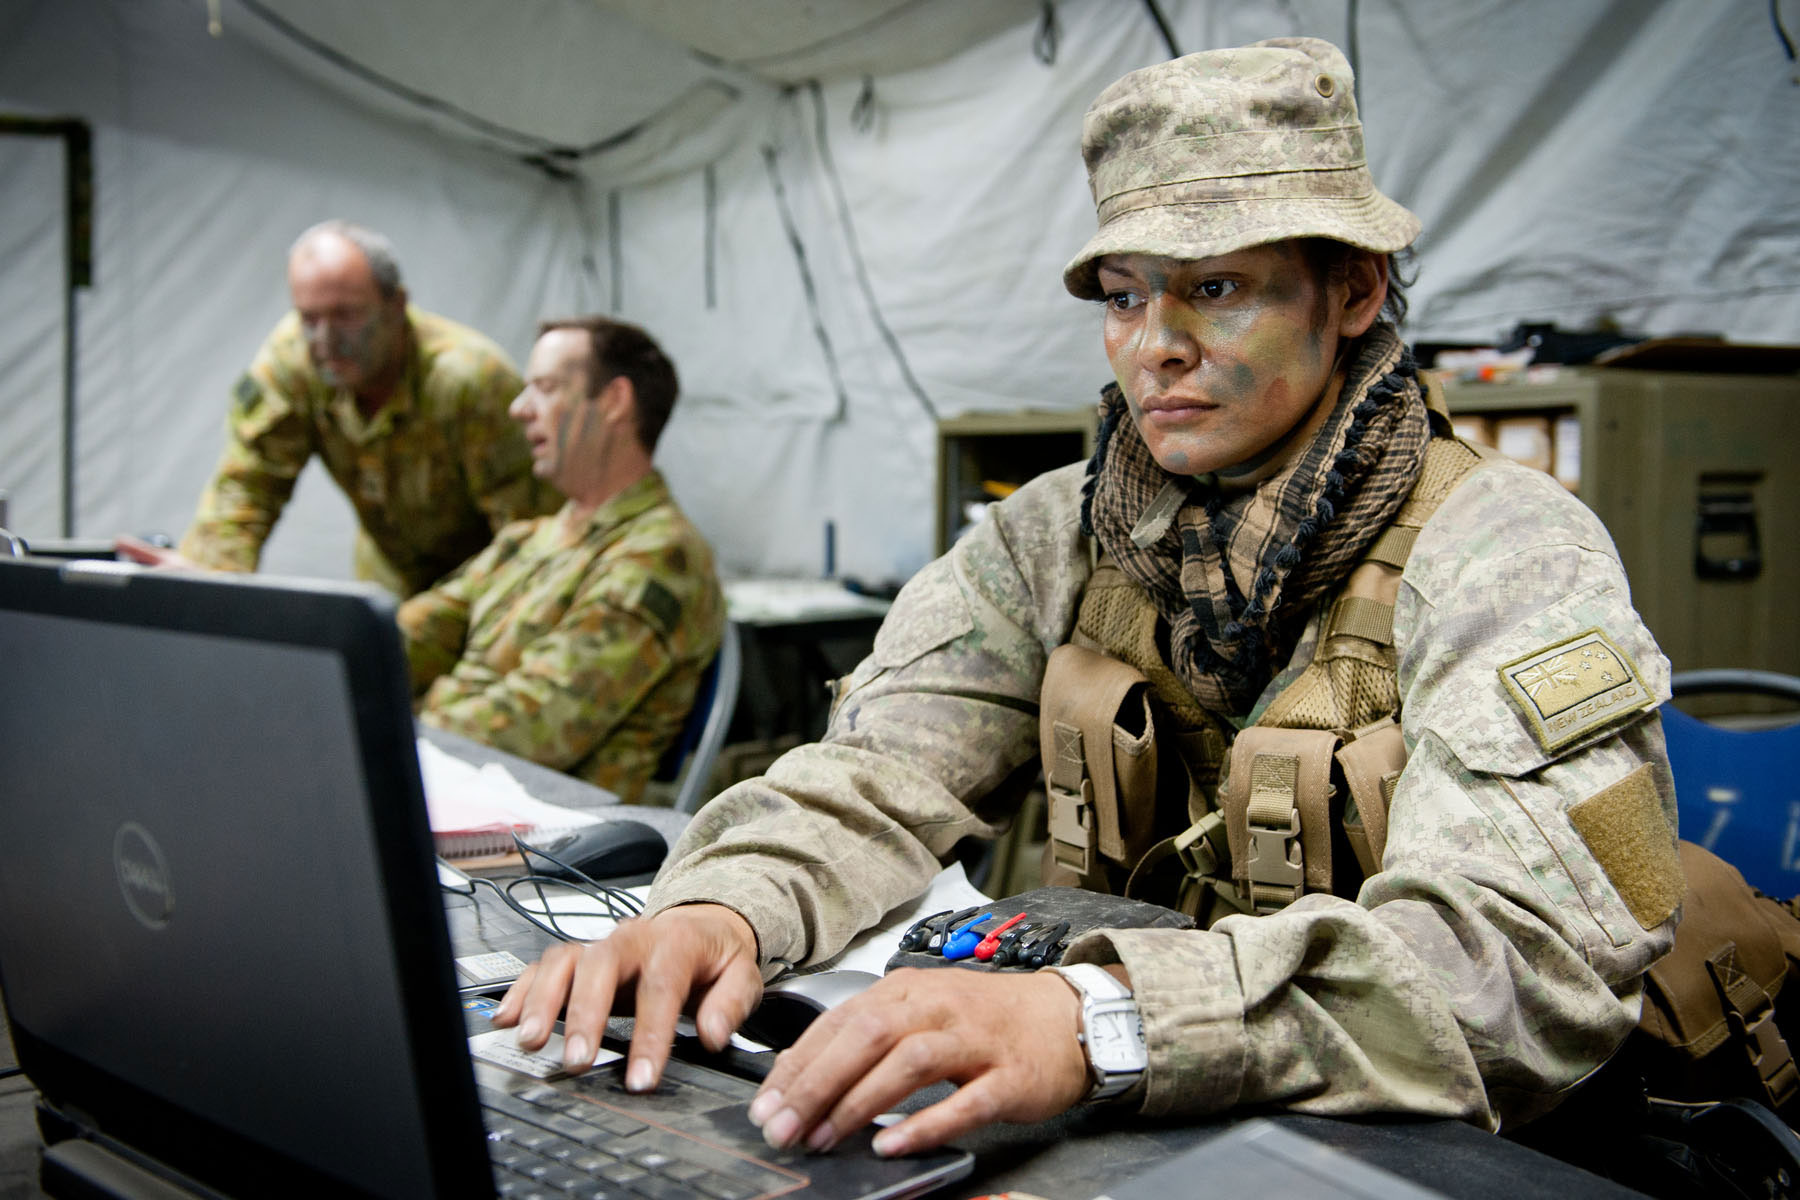 Ukraine soldier in front of computer